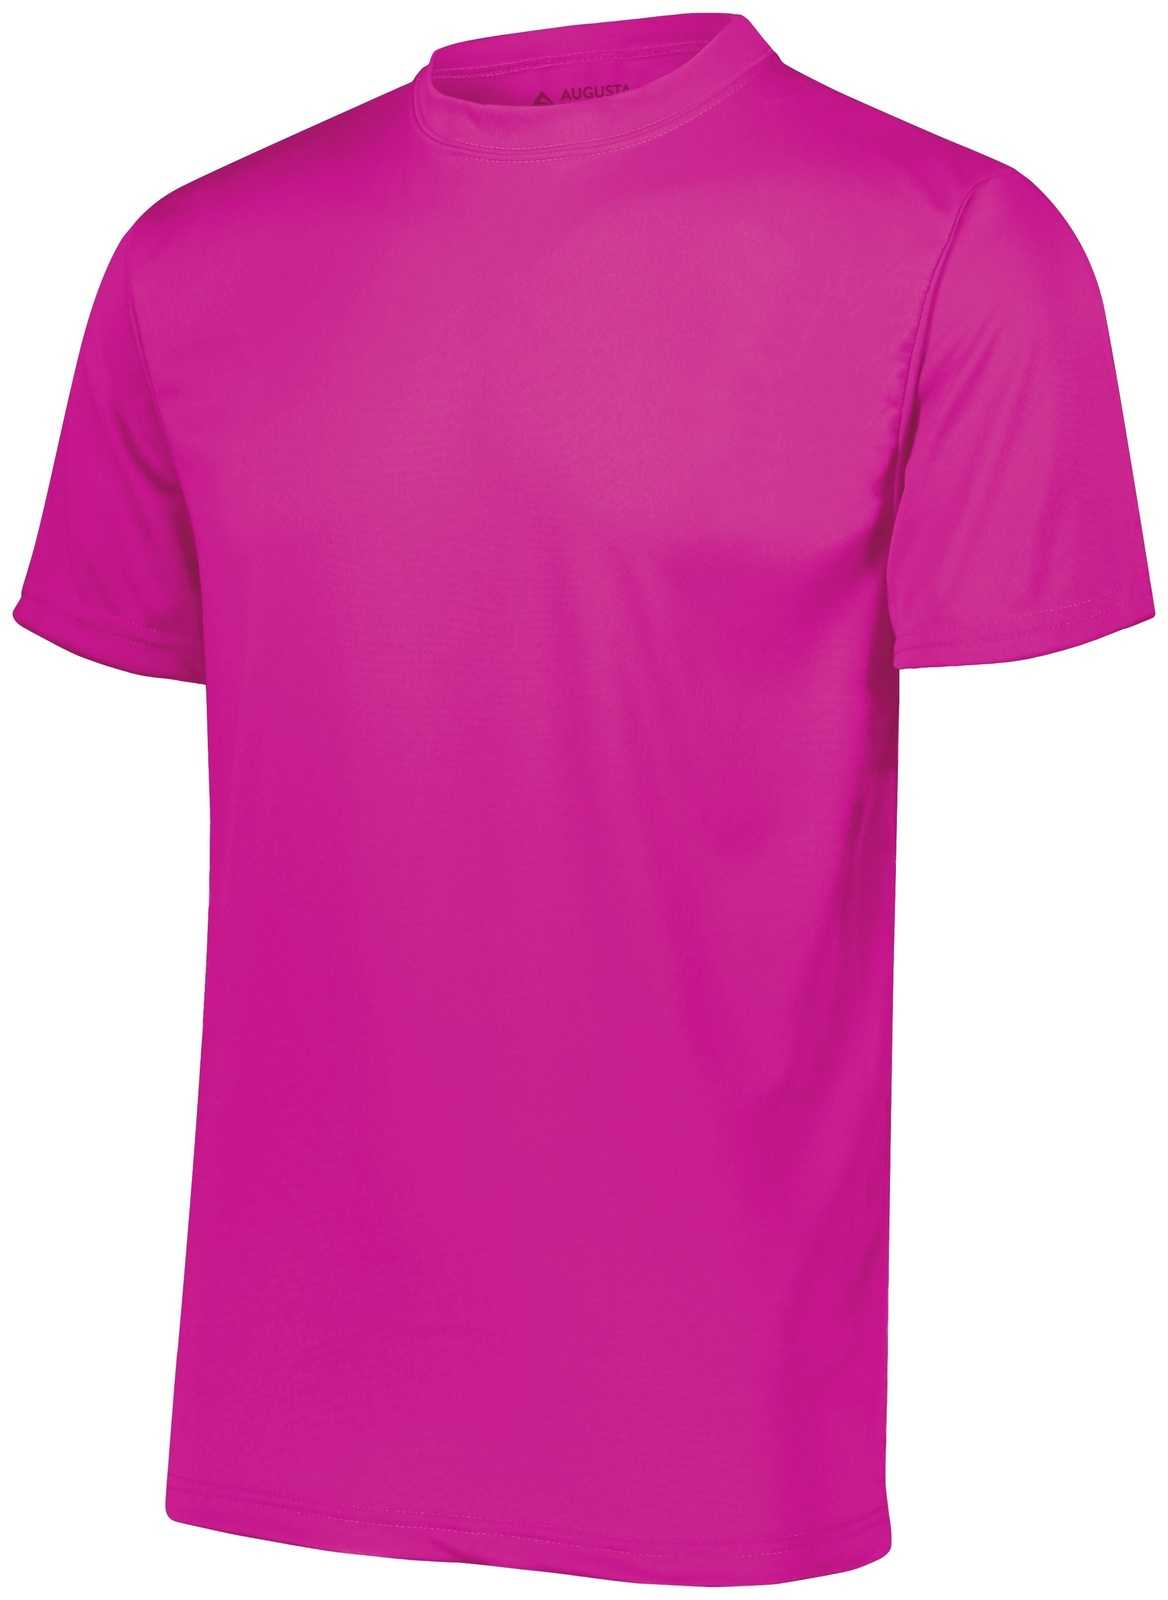 Augusta 790 NexGen Wicking T-Shirt - Power Pink - HIT a Double